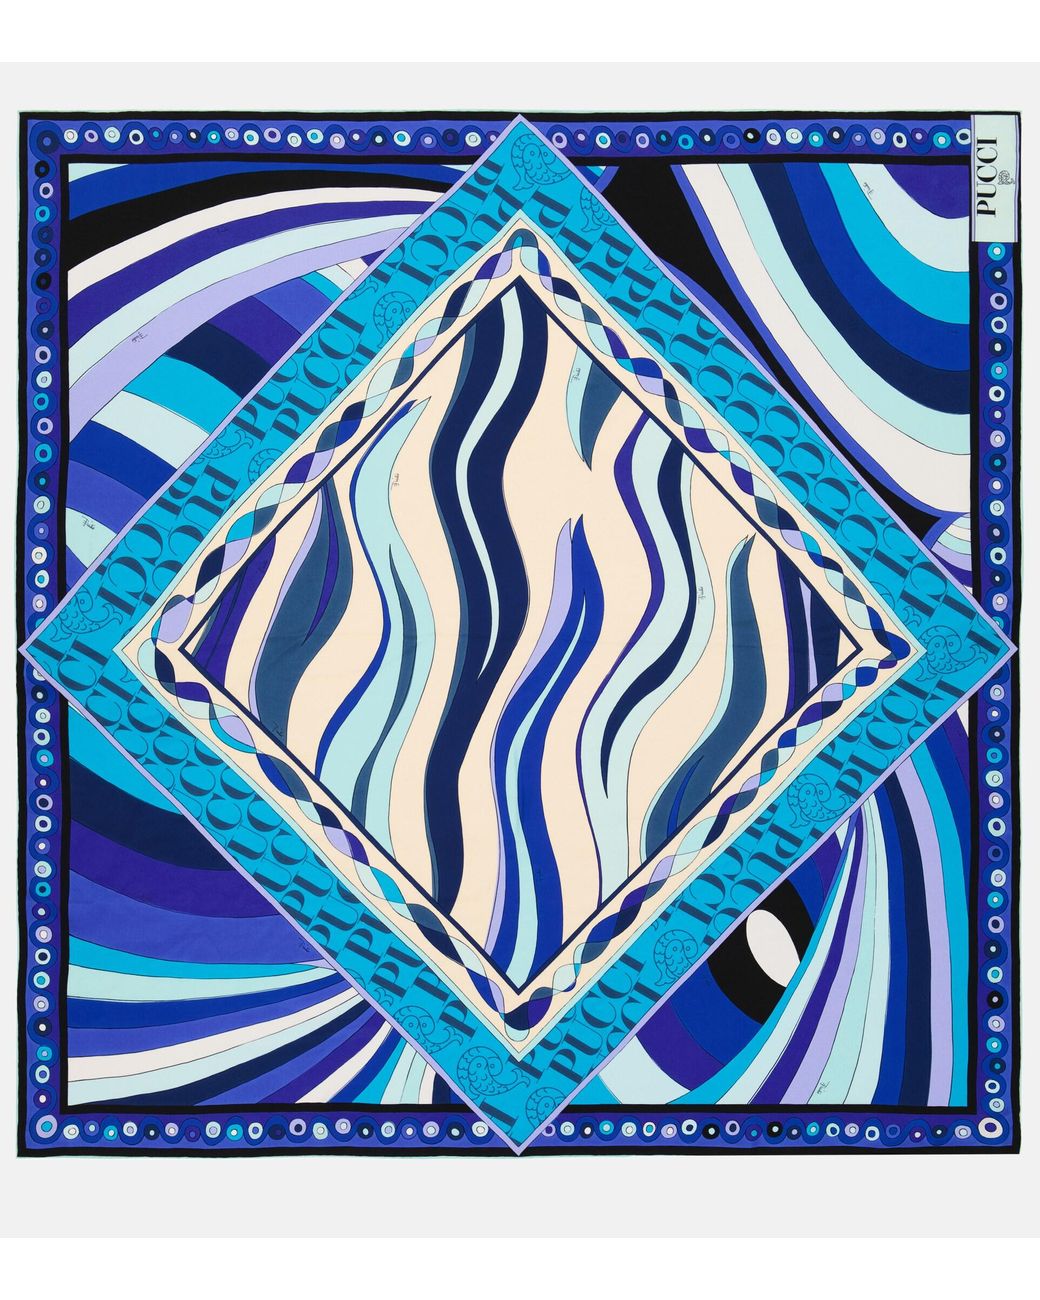 EMILIO PUCCI Printed silk scarf · VERGLE